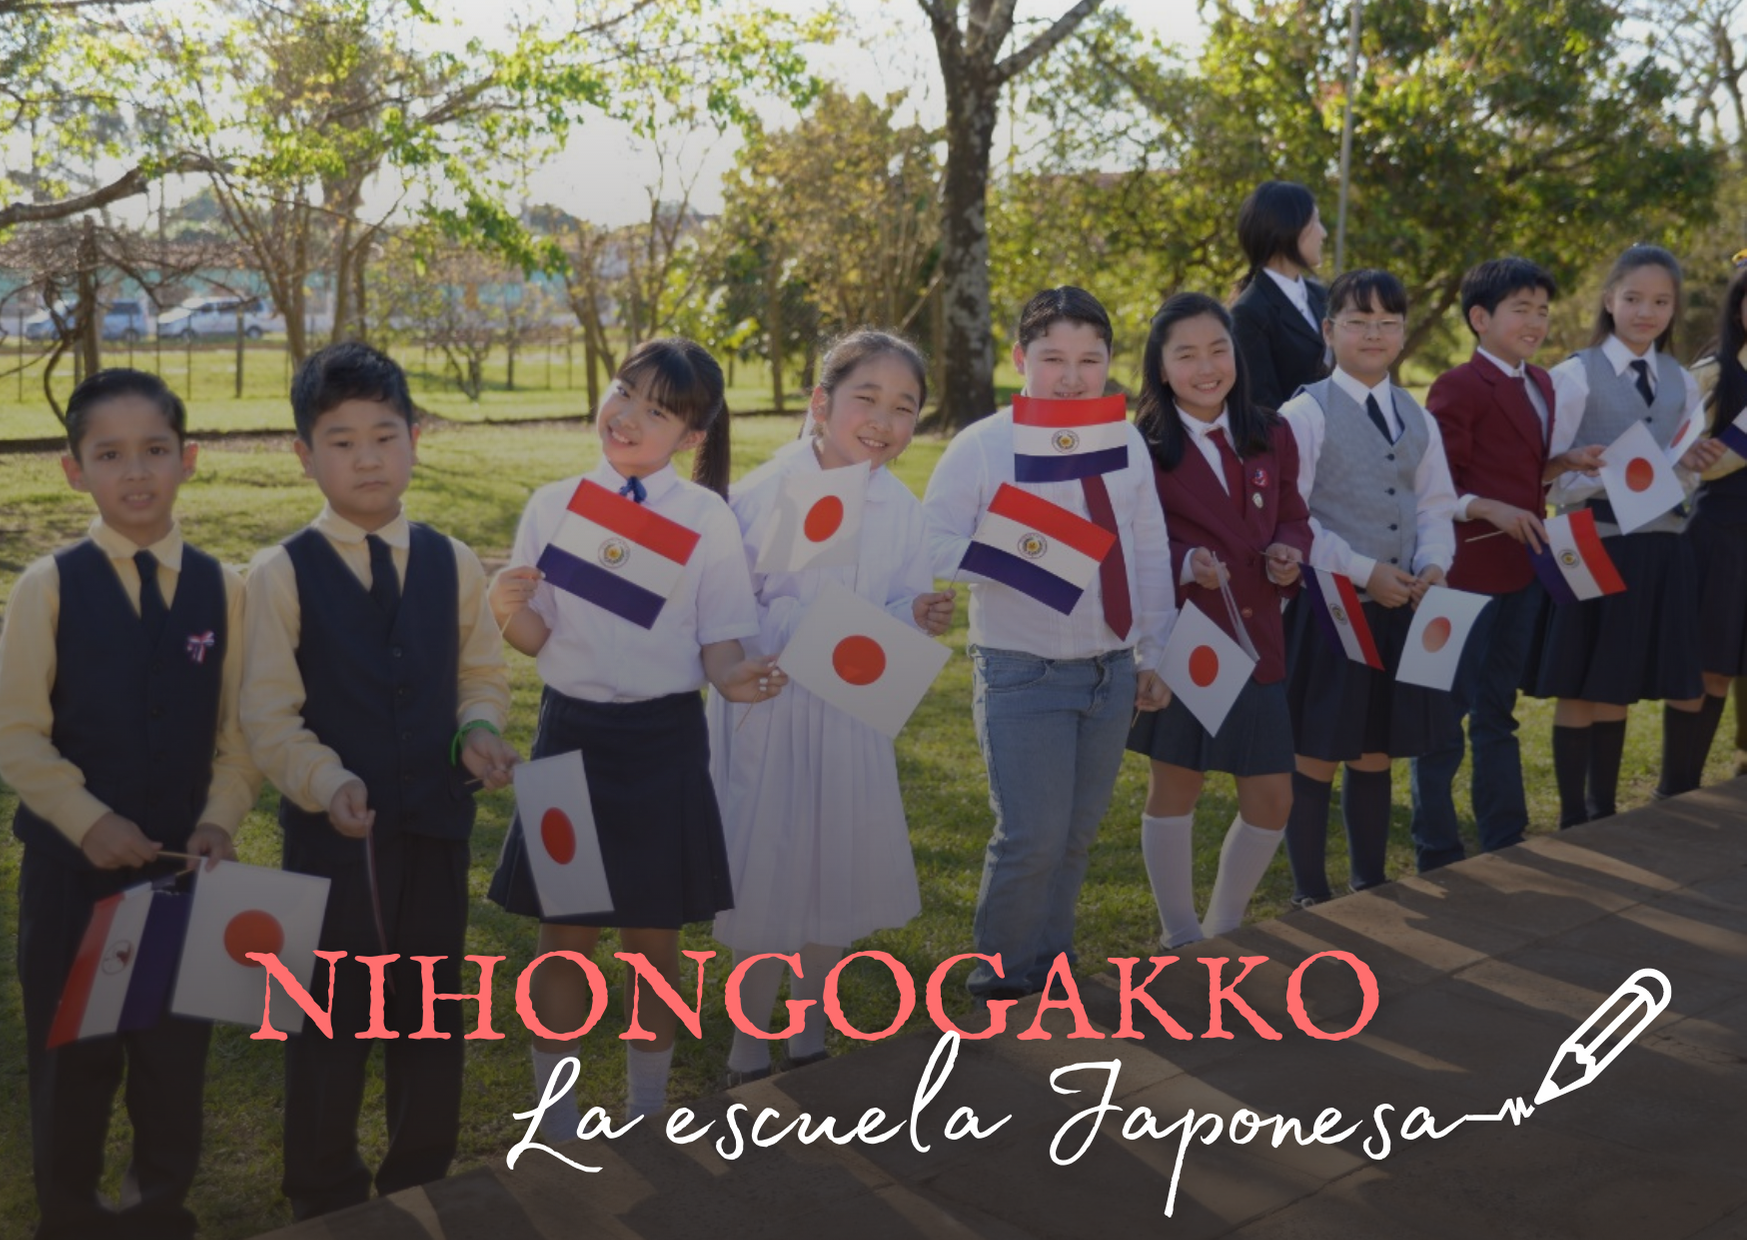 日本の学校のドキュメンタリーカバー